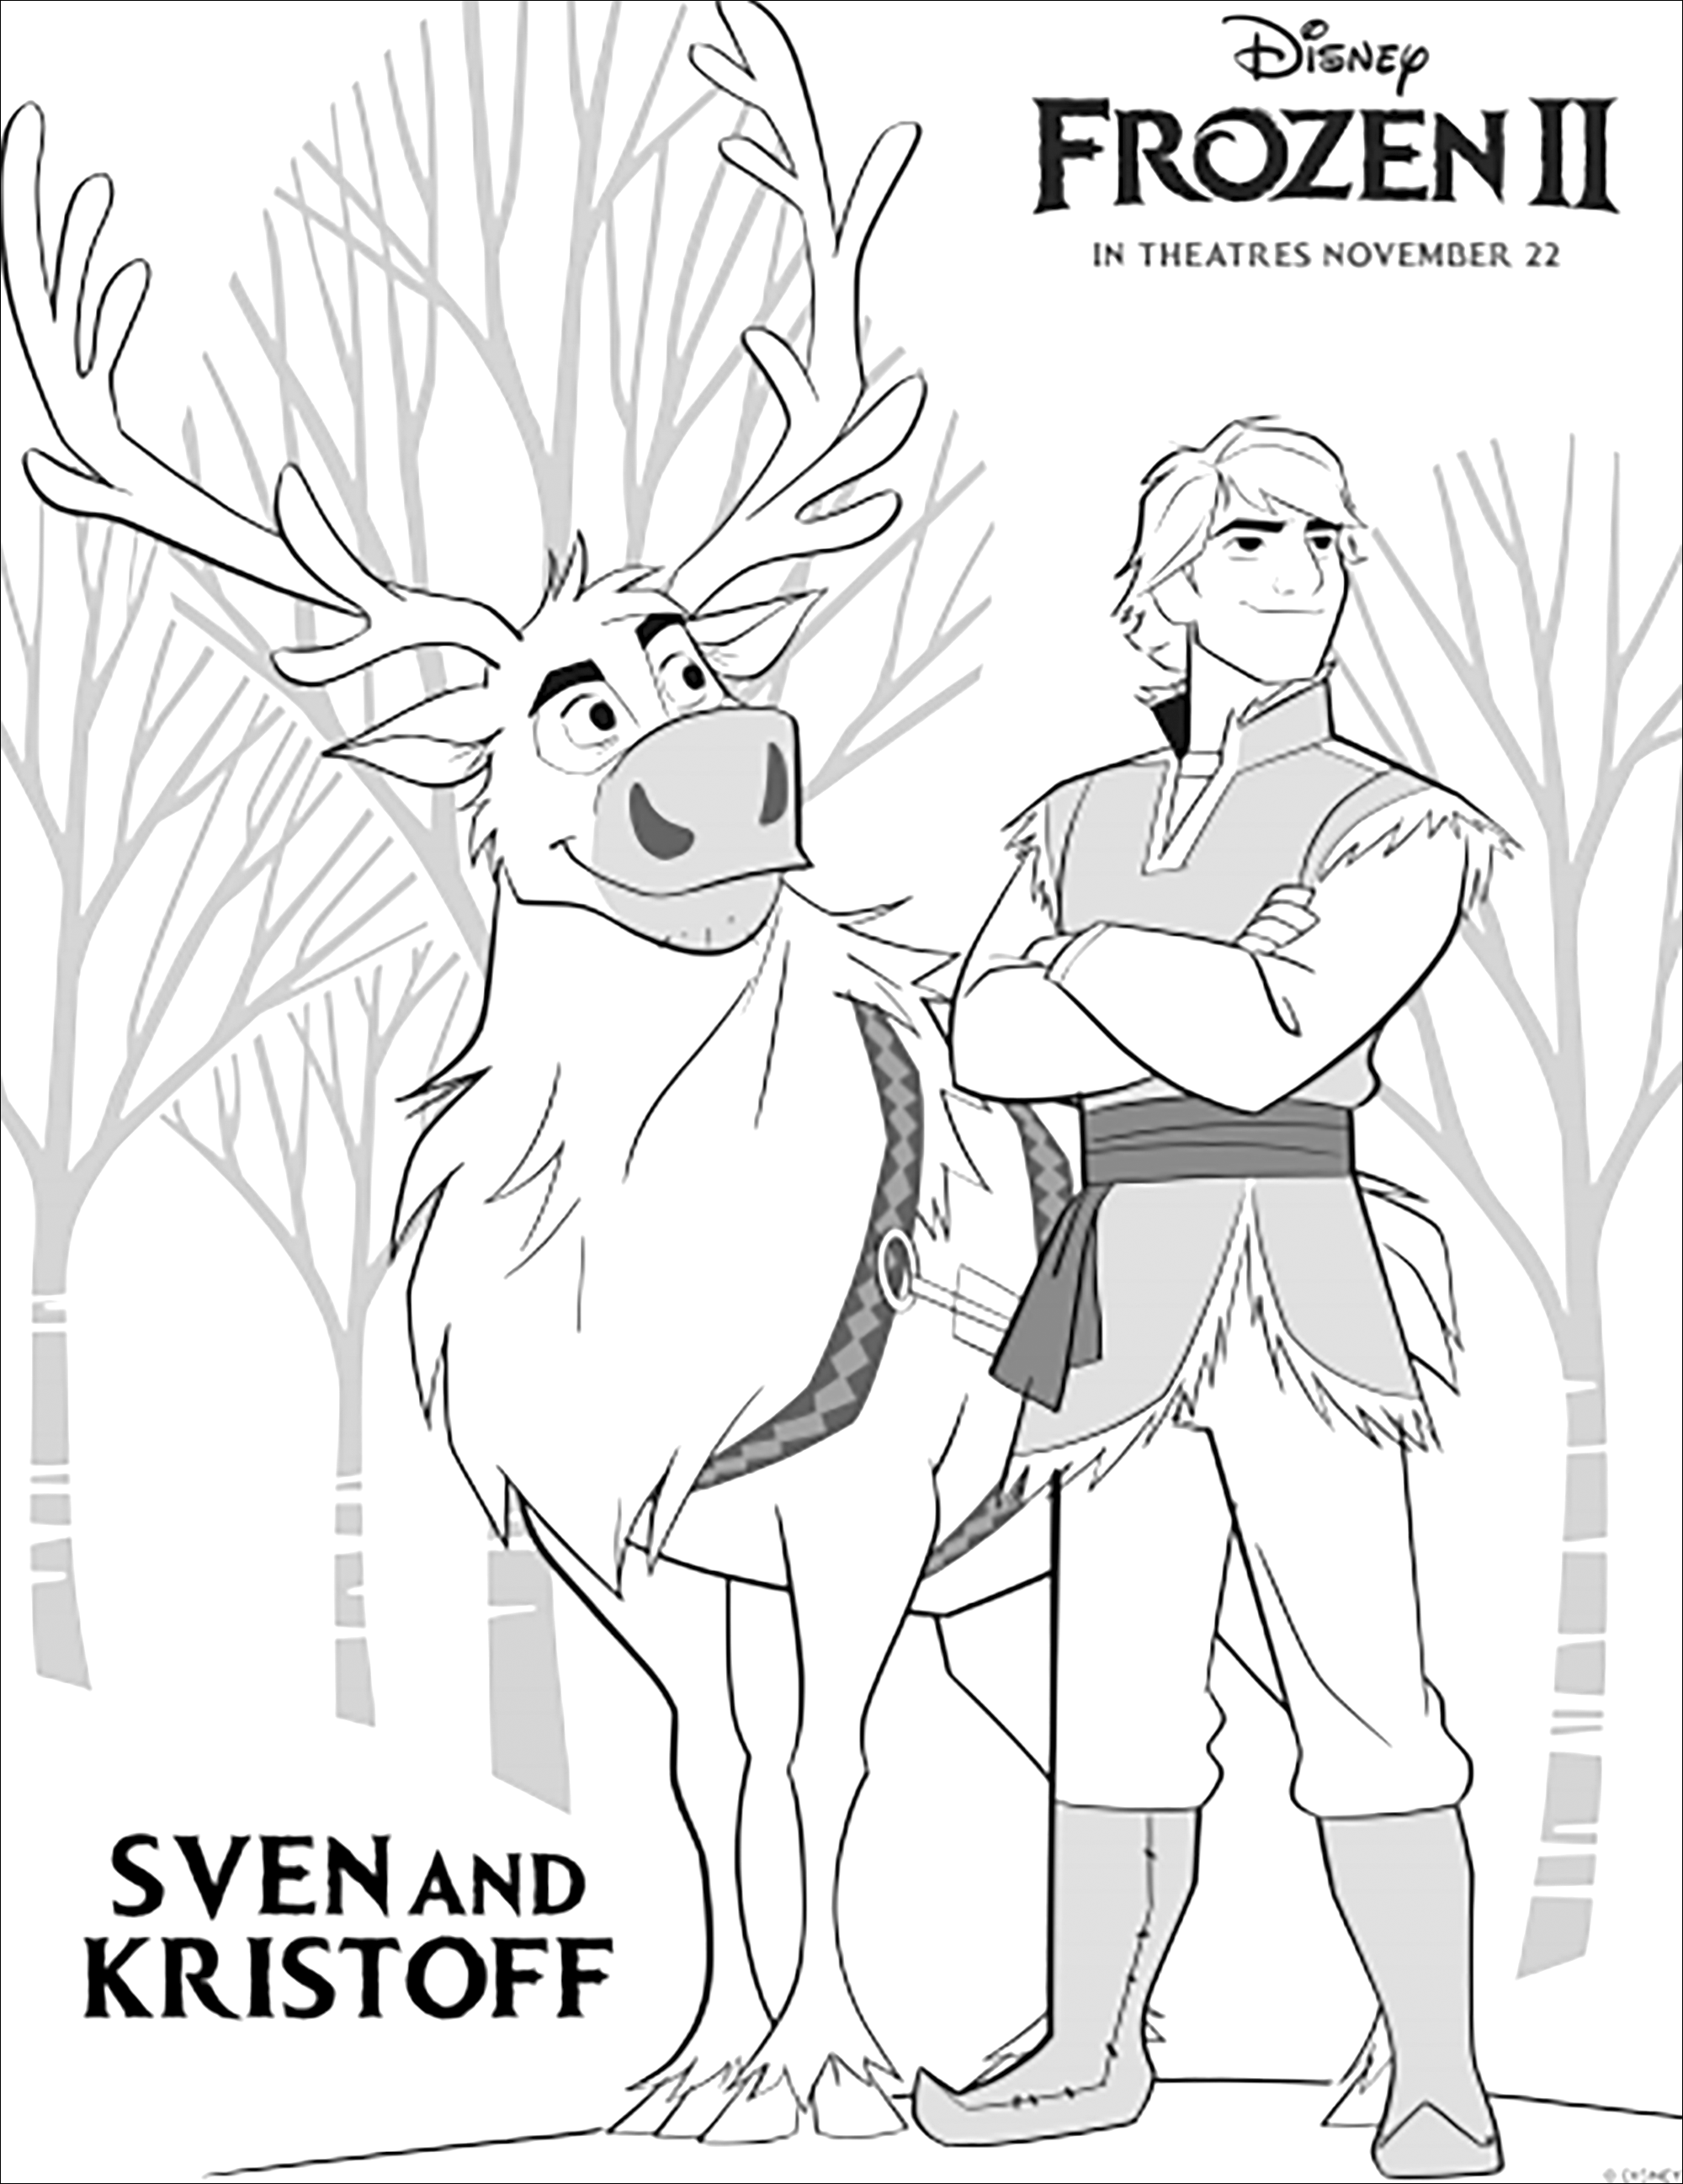 Kristoff et le renne Sven de retour dans La reine des neiges 2 de Disney (version avec texte)